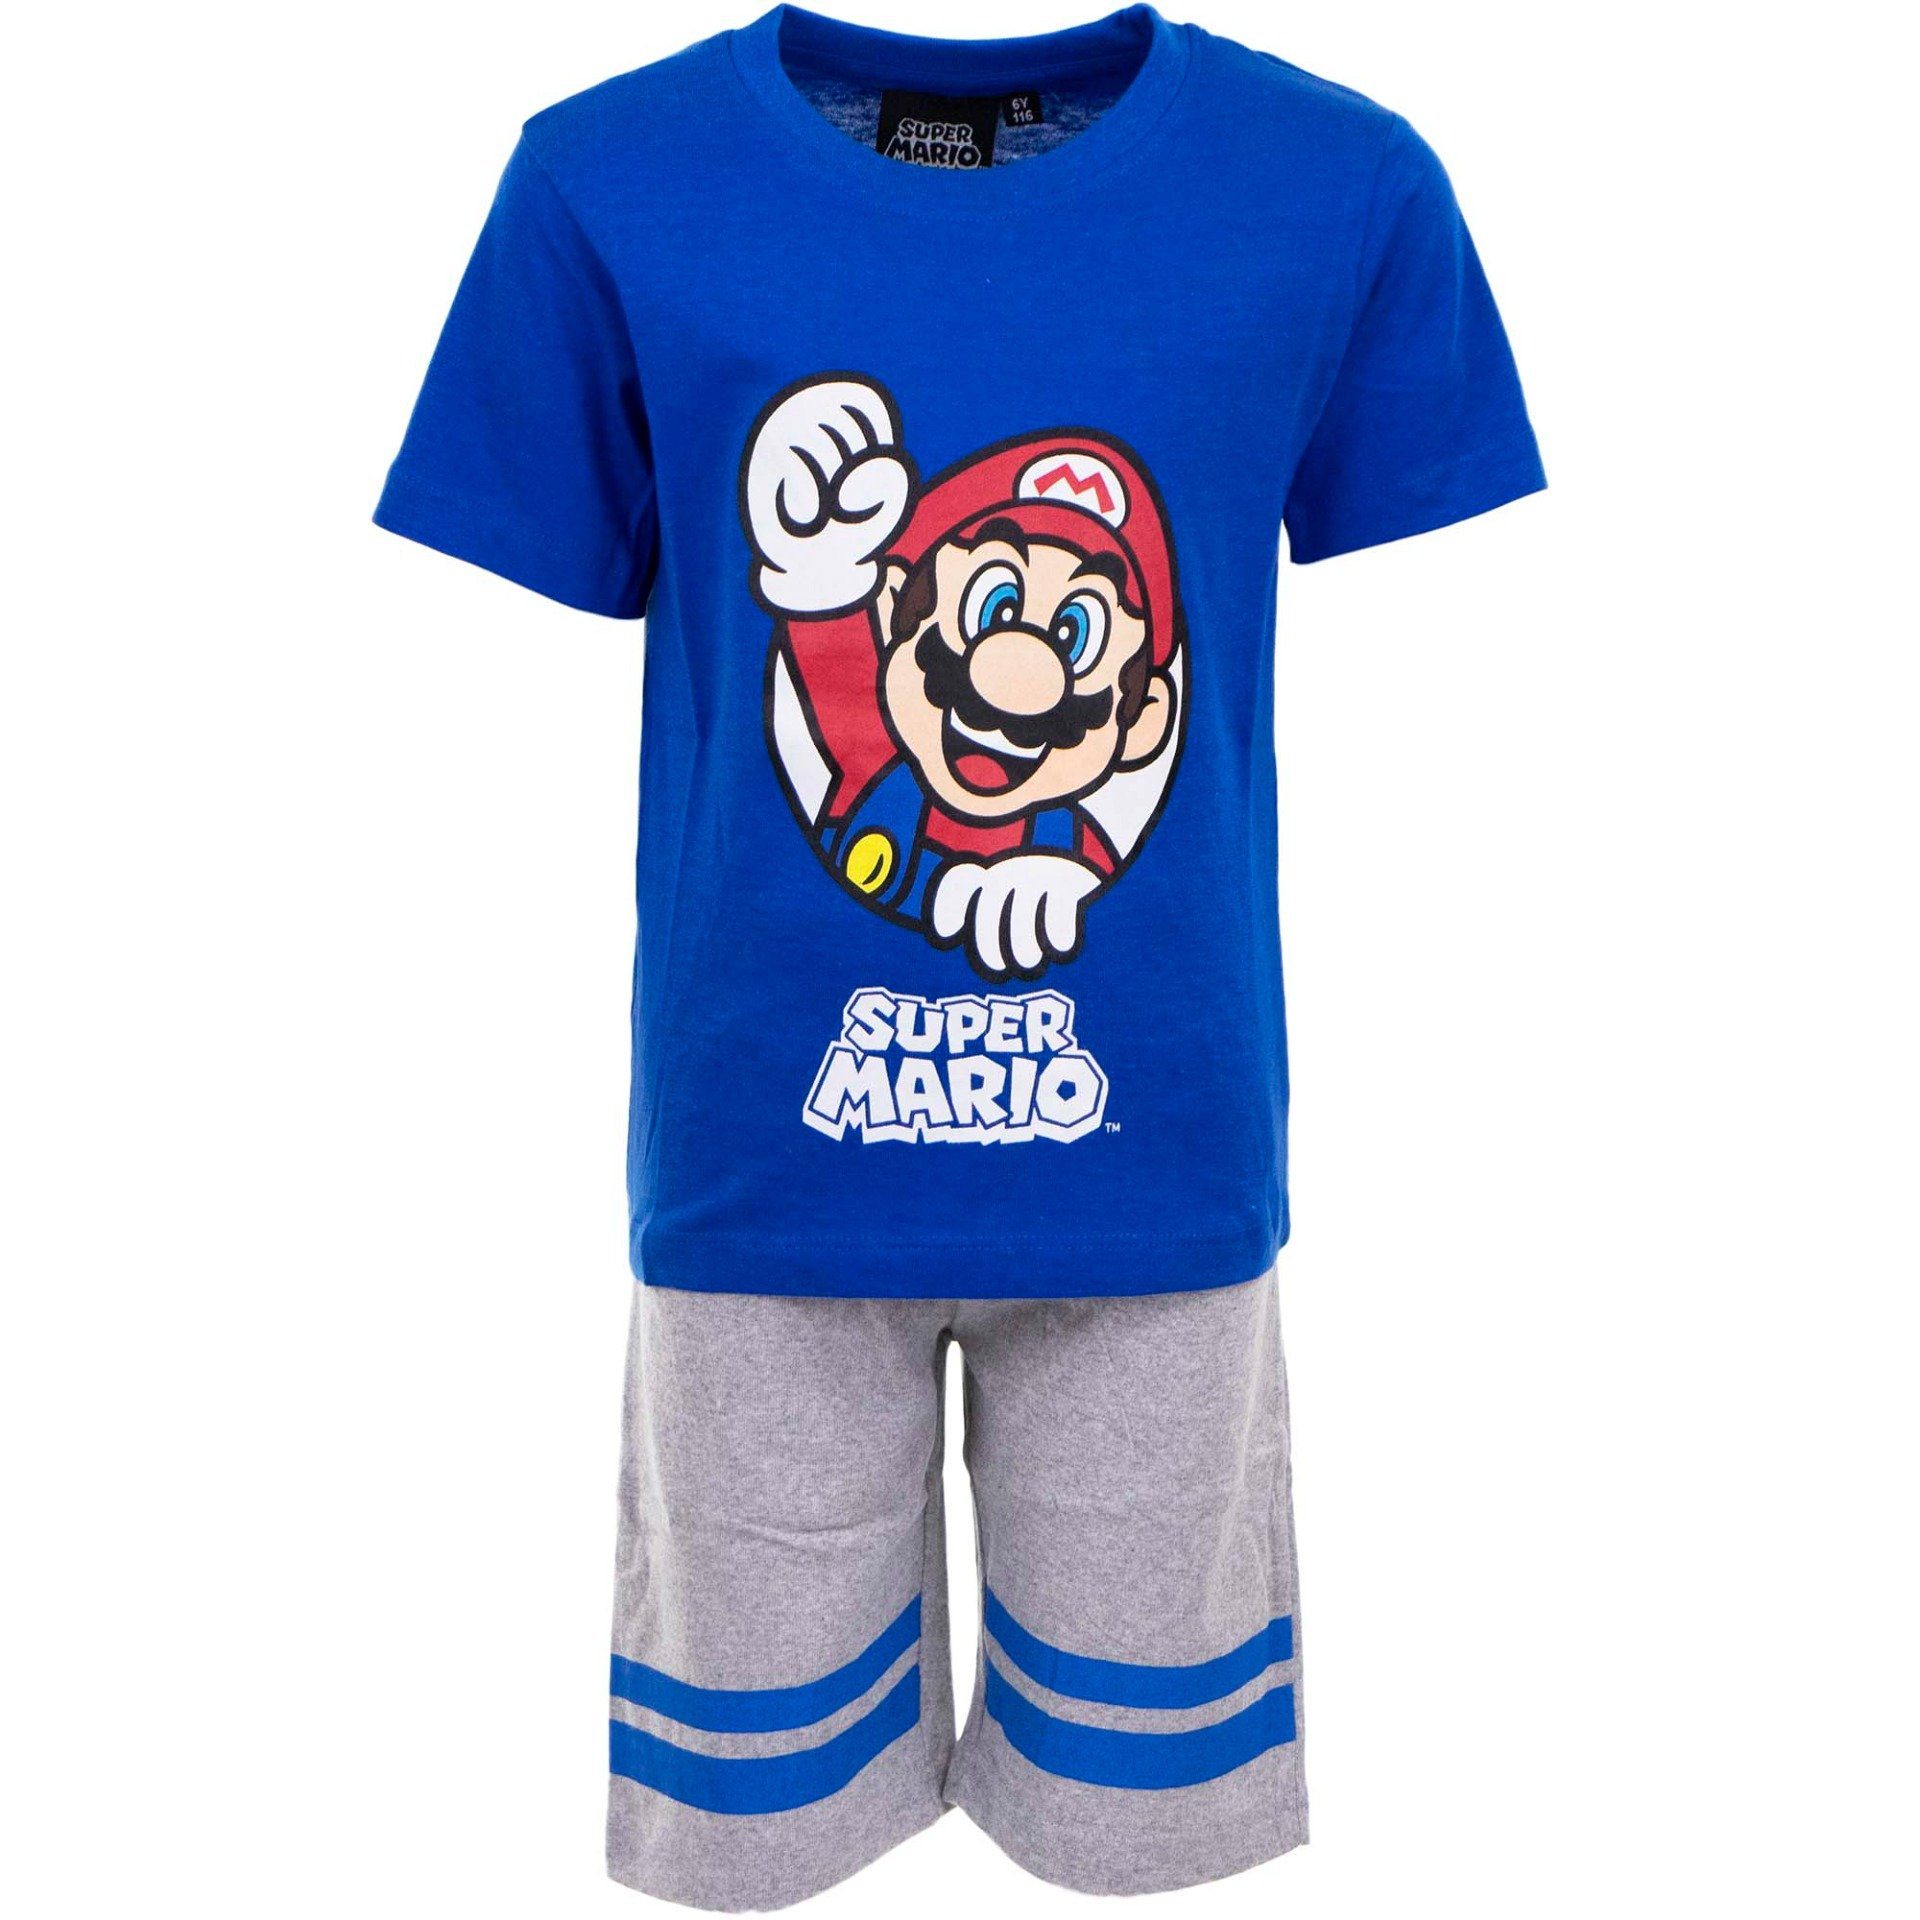 Super Mario Shorty »Super Mario Shorty Pyjama Set kurzer Schlafanzug für  Kinder Jungen + Mädchen Pijama Gr. 98 104 110 116 122 128« online kaufen |  OTTO